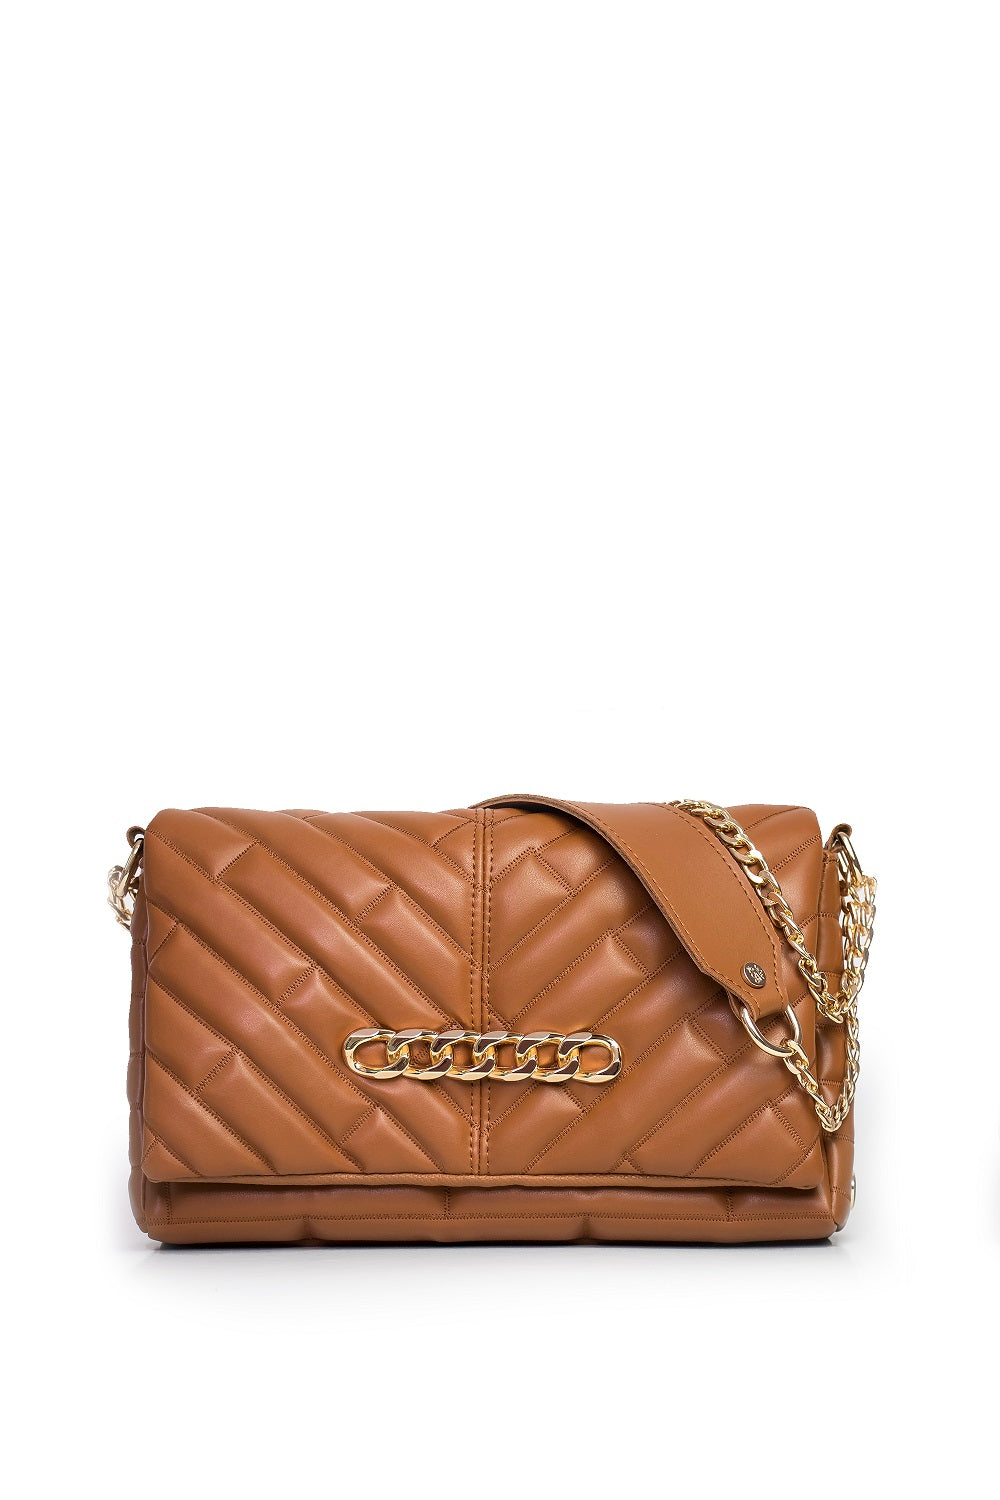 Luxury handbag - BAG - DIVA - SPECIAL CAMEL GOLD